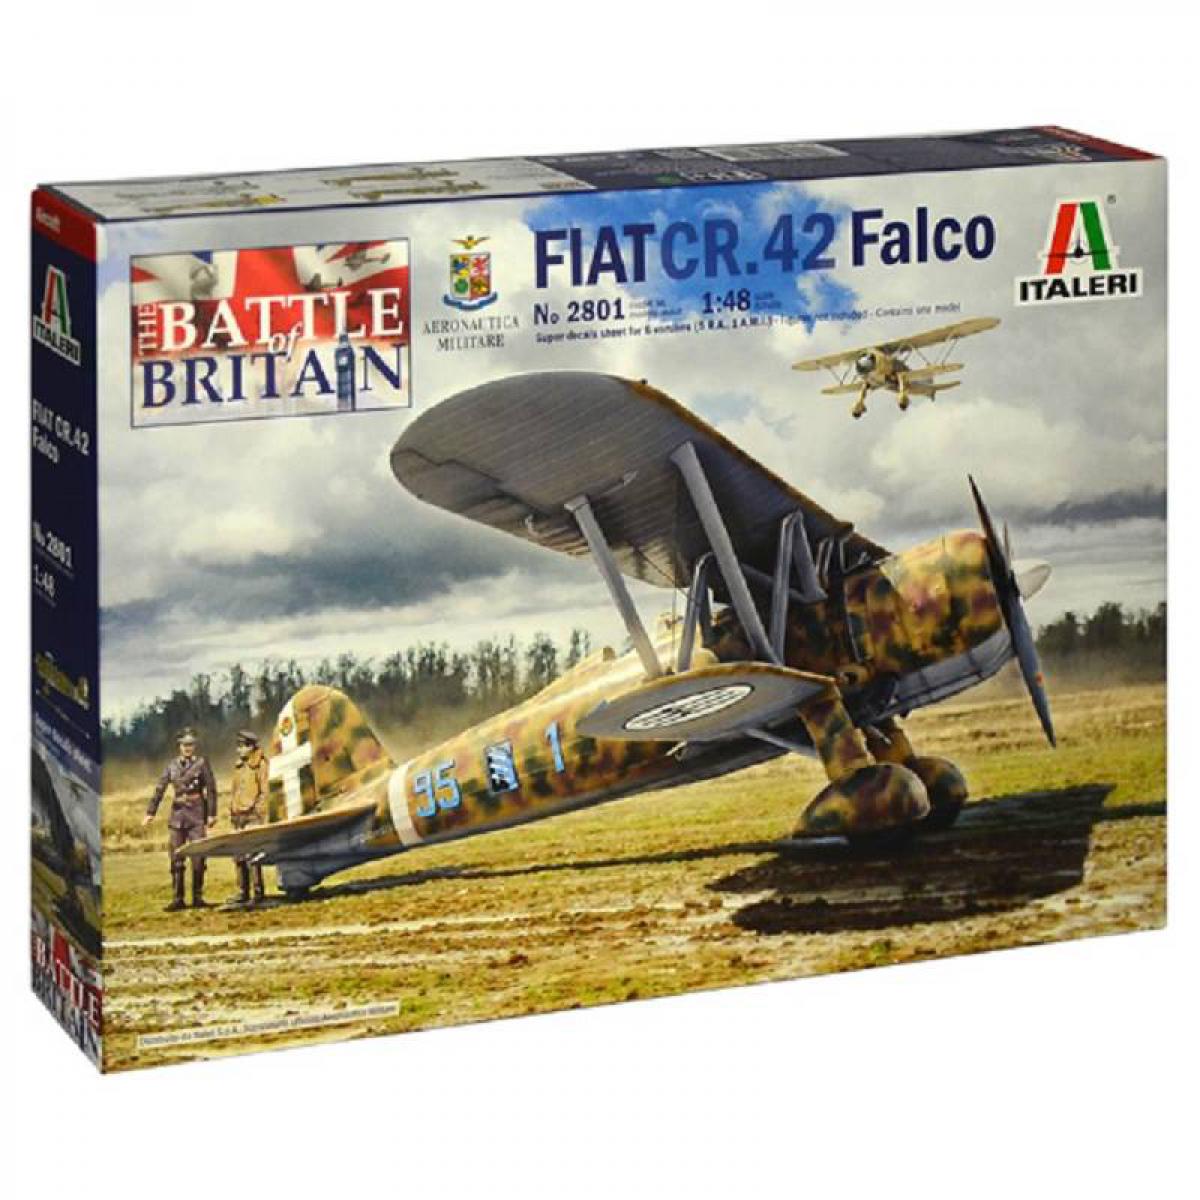 Italeri - Maquette Avion Fiat Cr.42 Falco - Avions